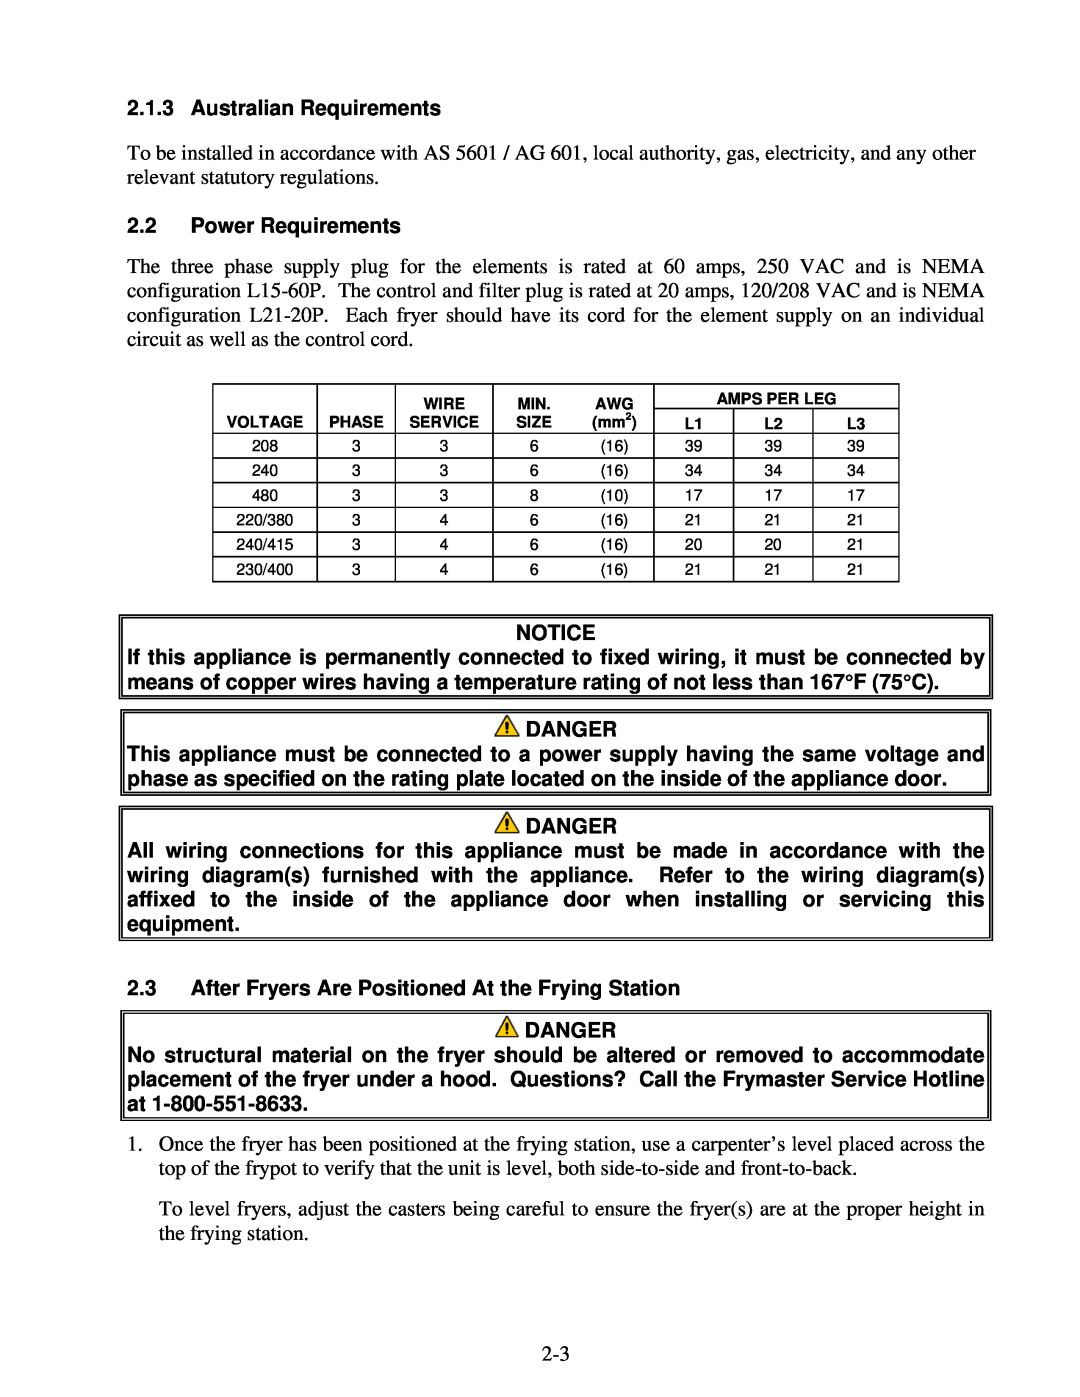 Frymaster BIELA14 warranty Australian Requirements, 2.2Power Requirements, Notice, Danger 